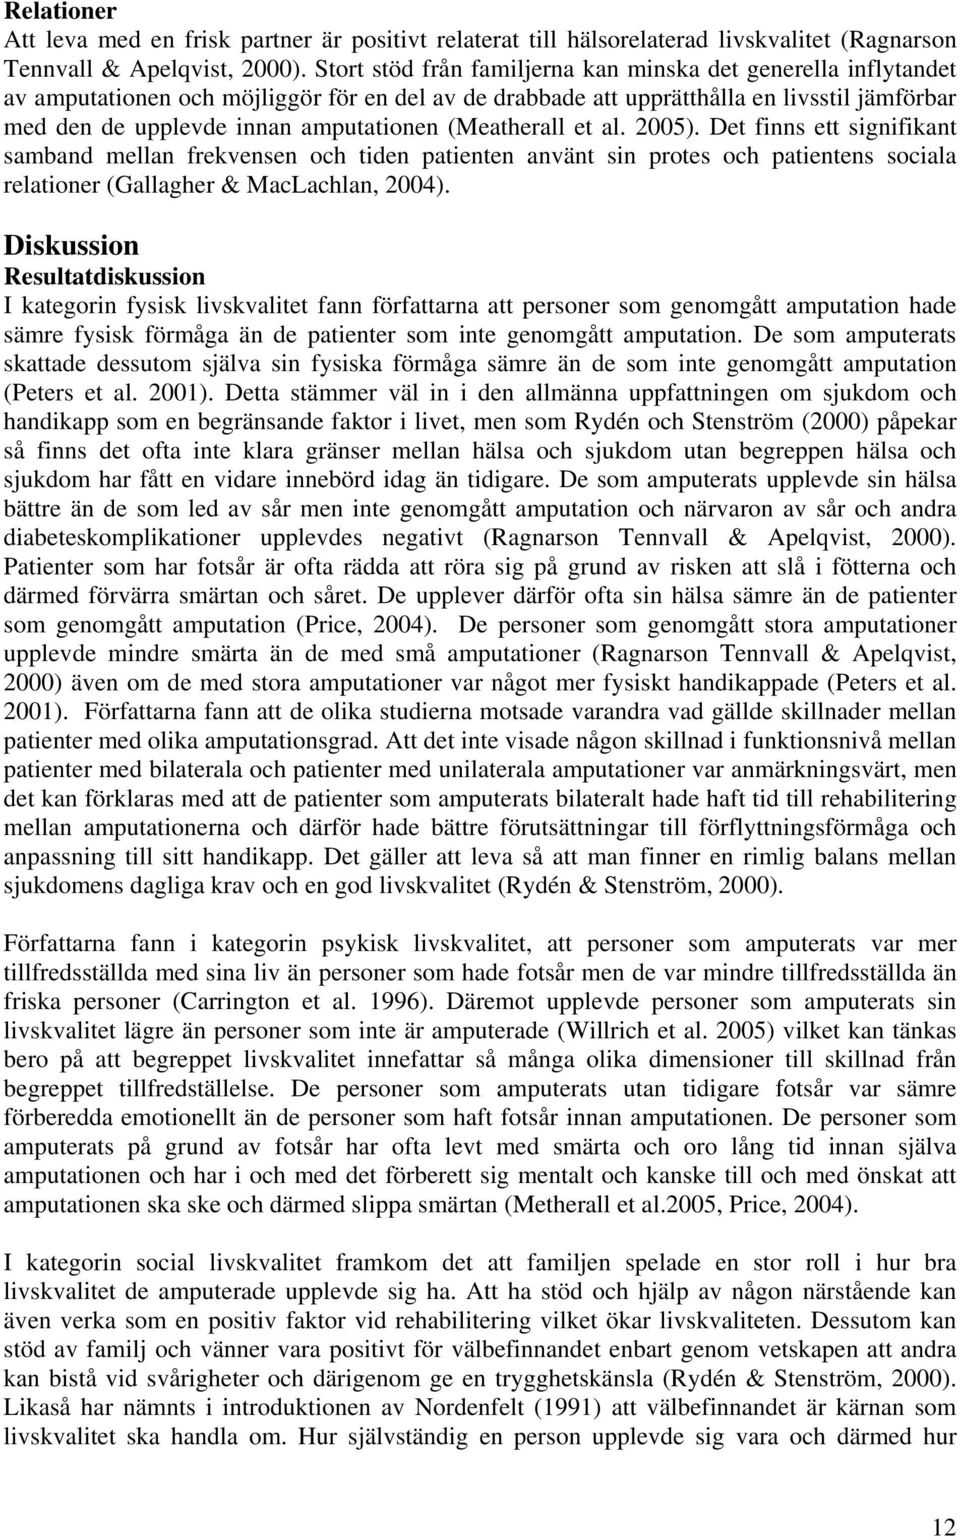 (Meatherall et al. 2005). Det finns ett signifikant samband mellan frekvensen och tiden patienten använt sin protes och patientens sociala relationer (Gallagher & MacLachlan, 2004).